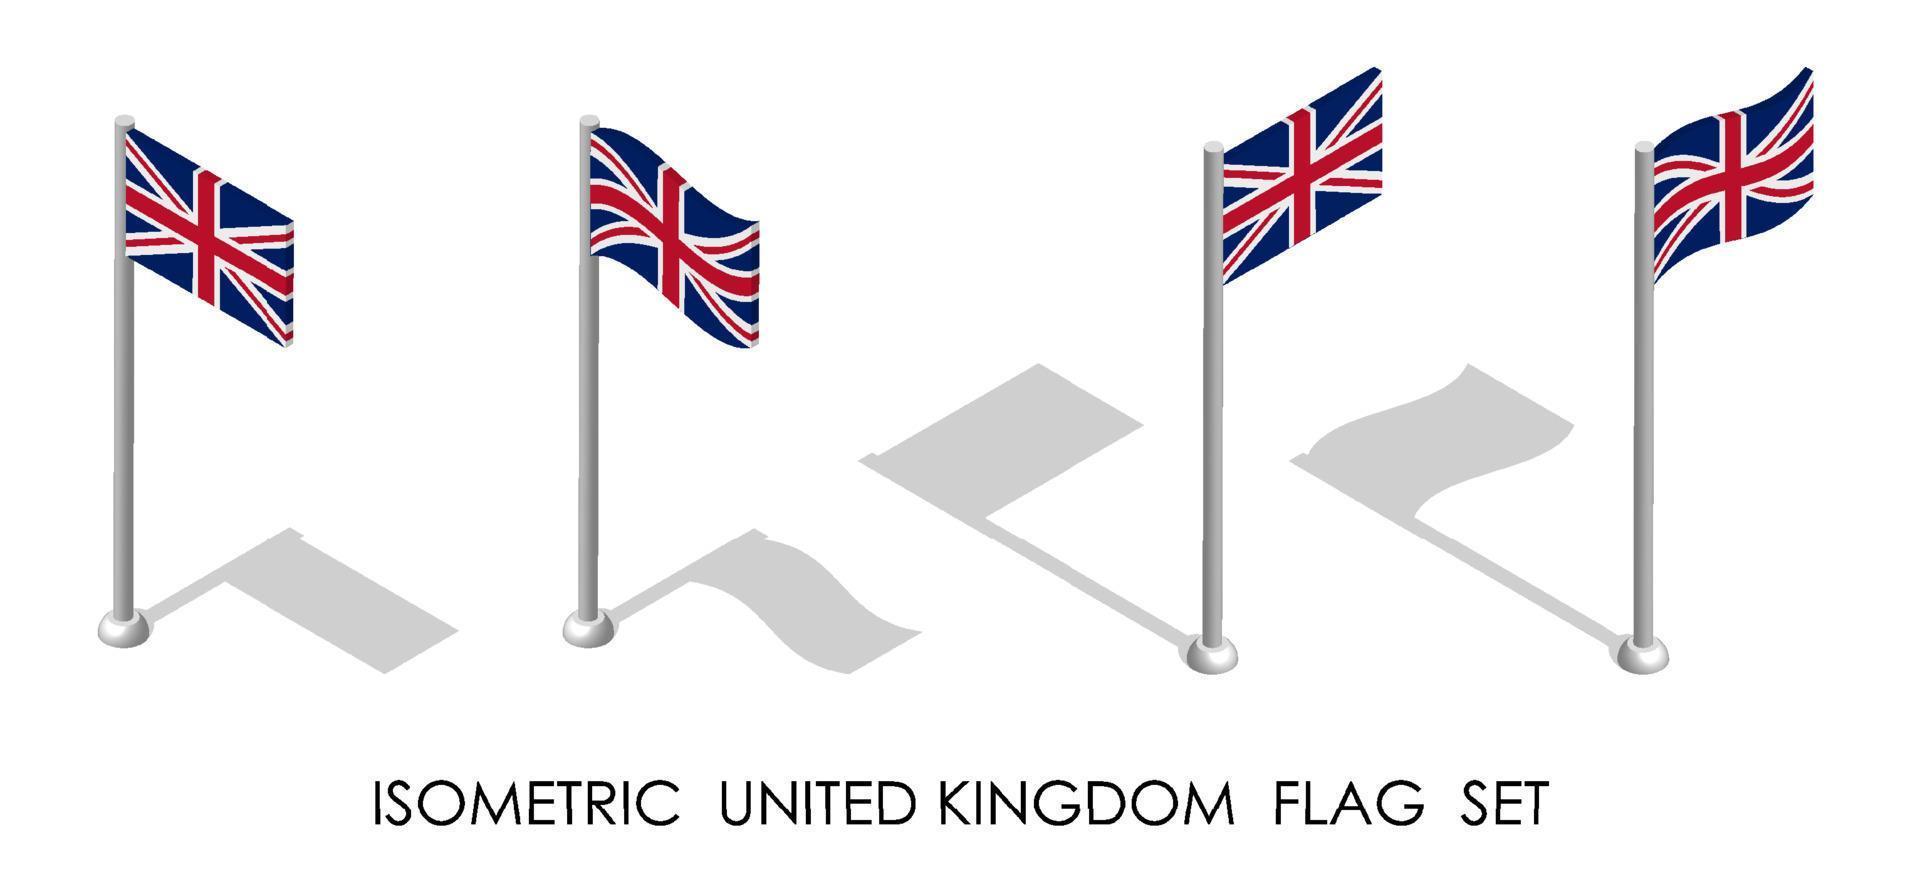 bandera isométrica del reino unido de gran bretaña e irlanda del norte en posición estática y en movimiento en el asta de la bandera. Vector 3d